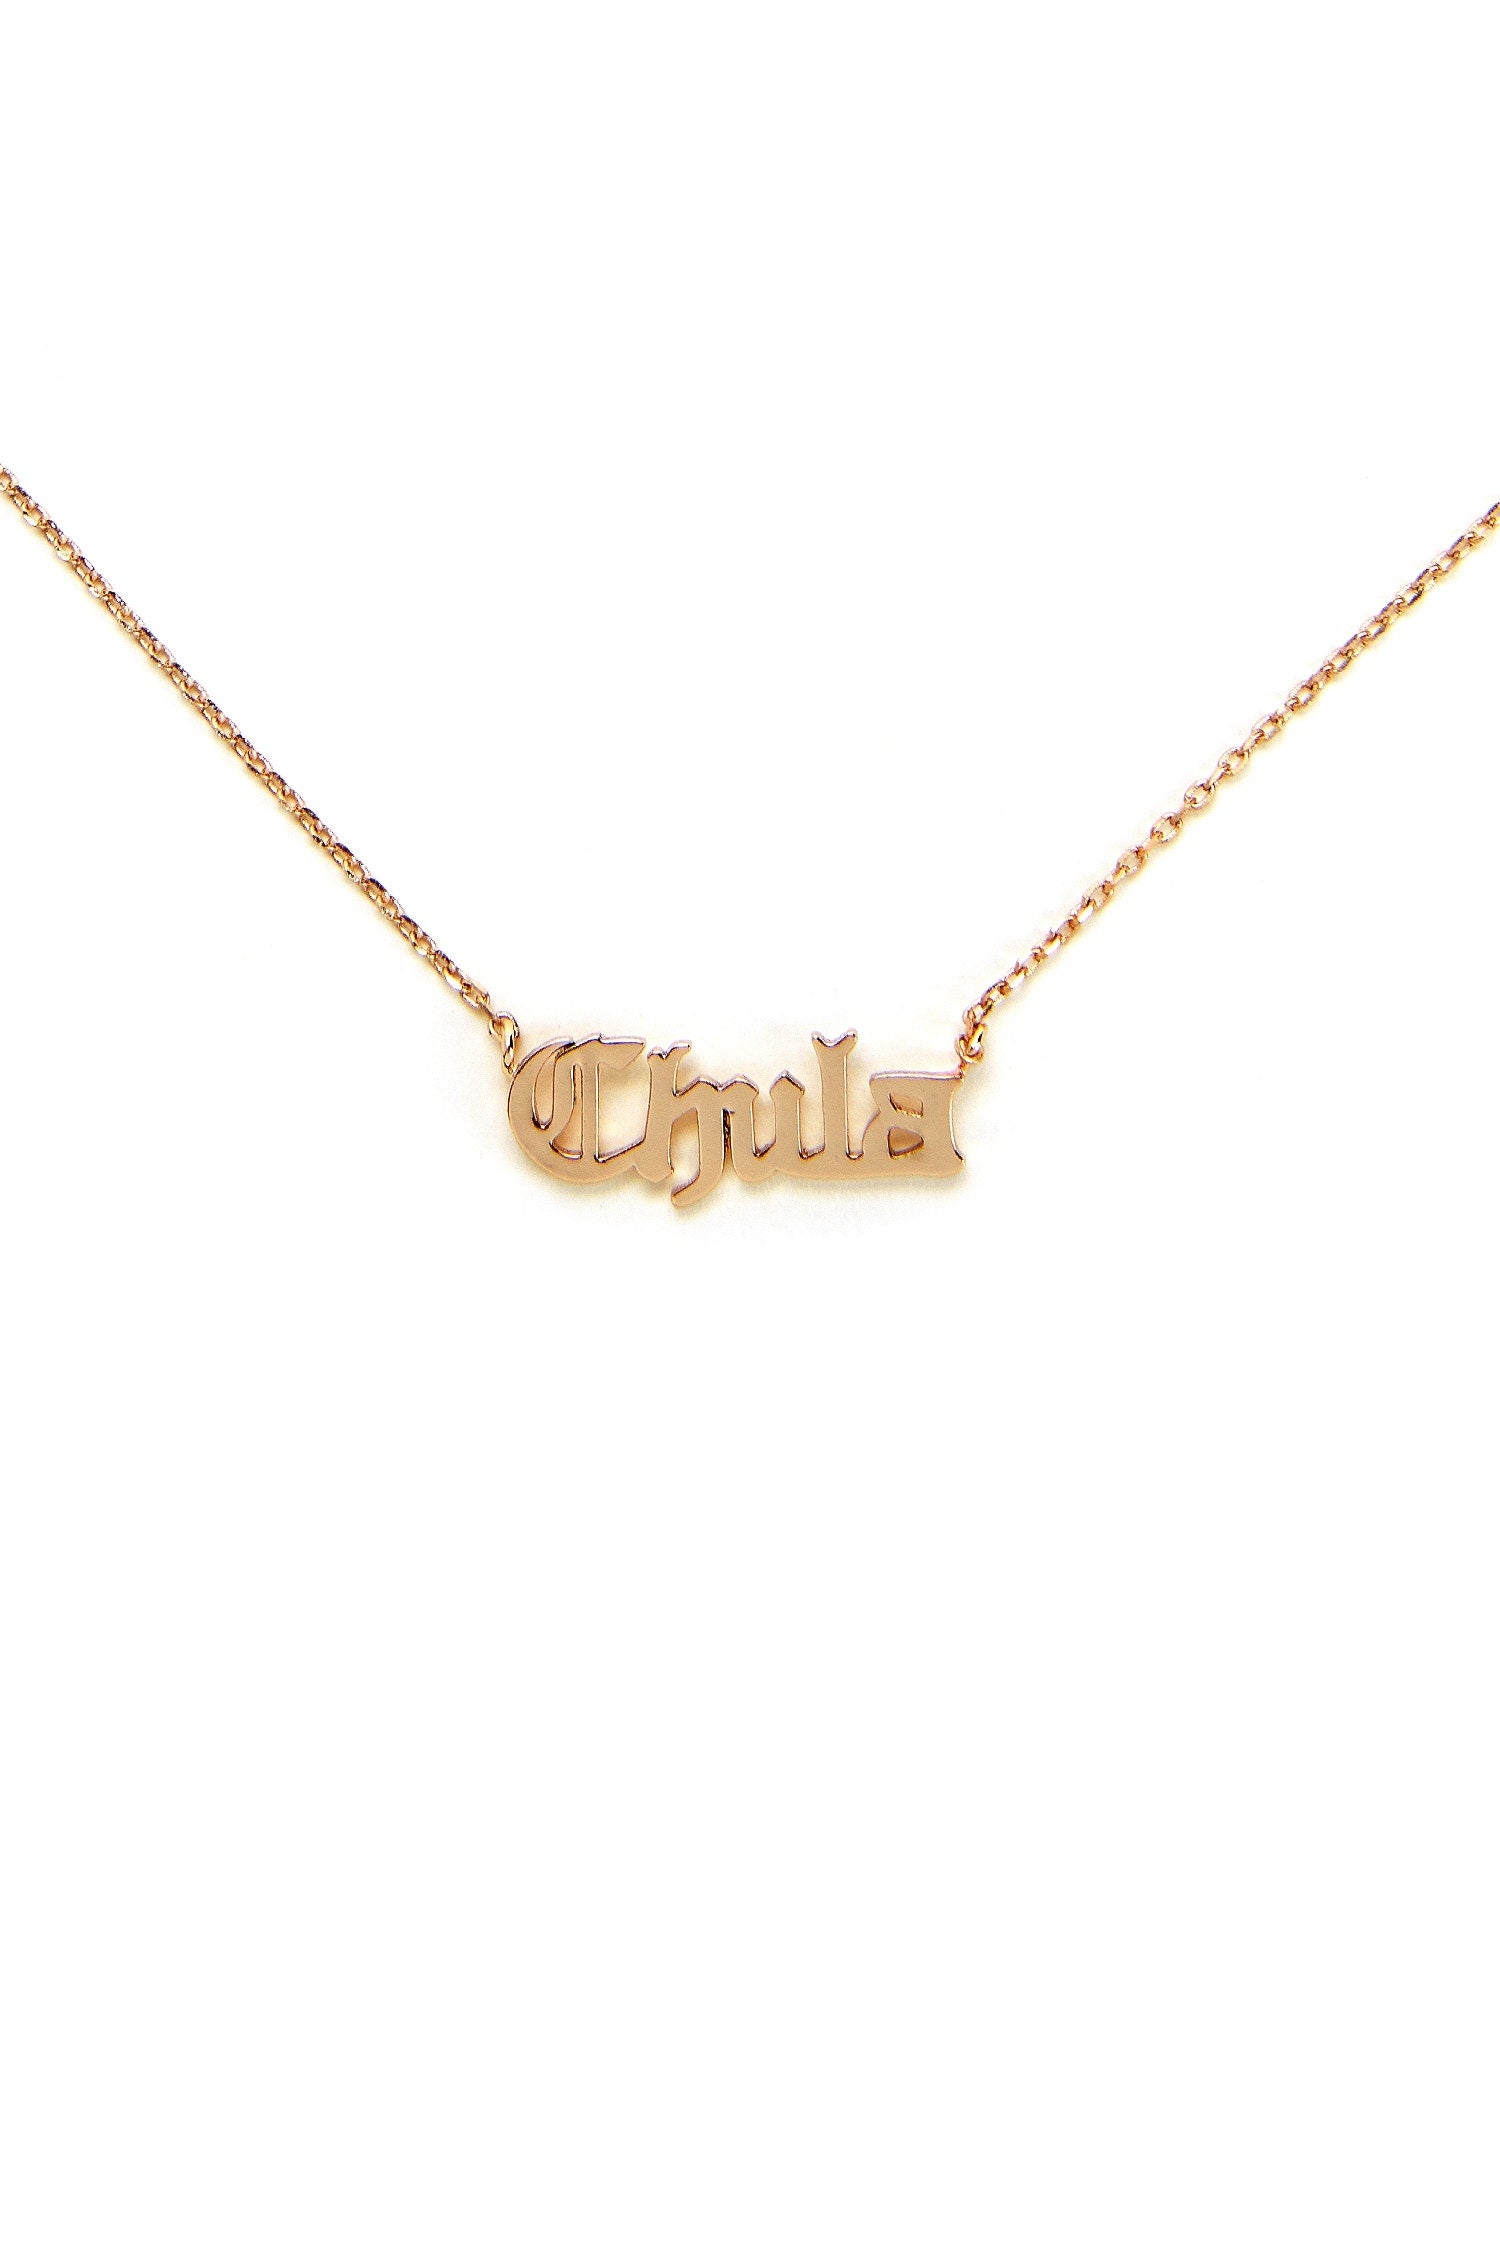 Chula Script Chain Necklace